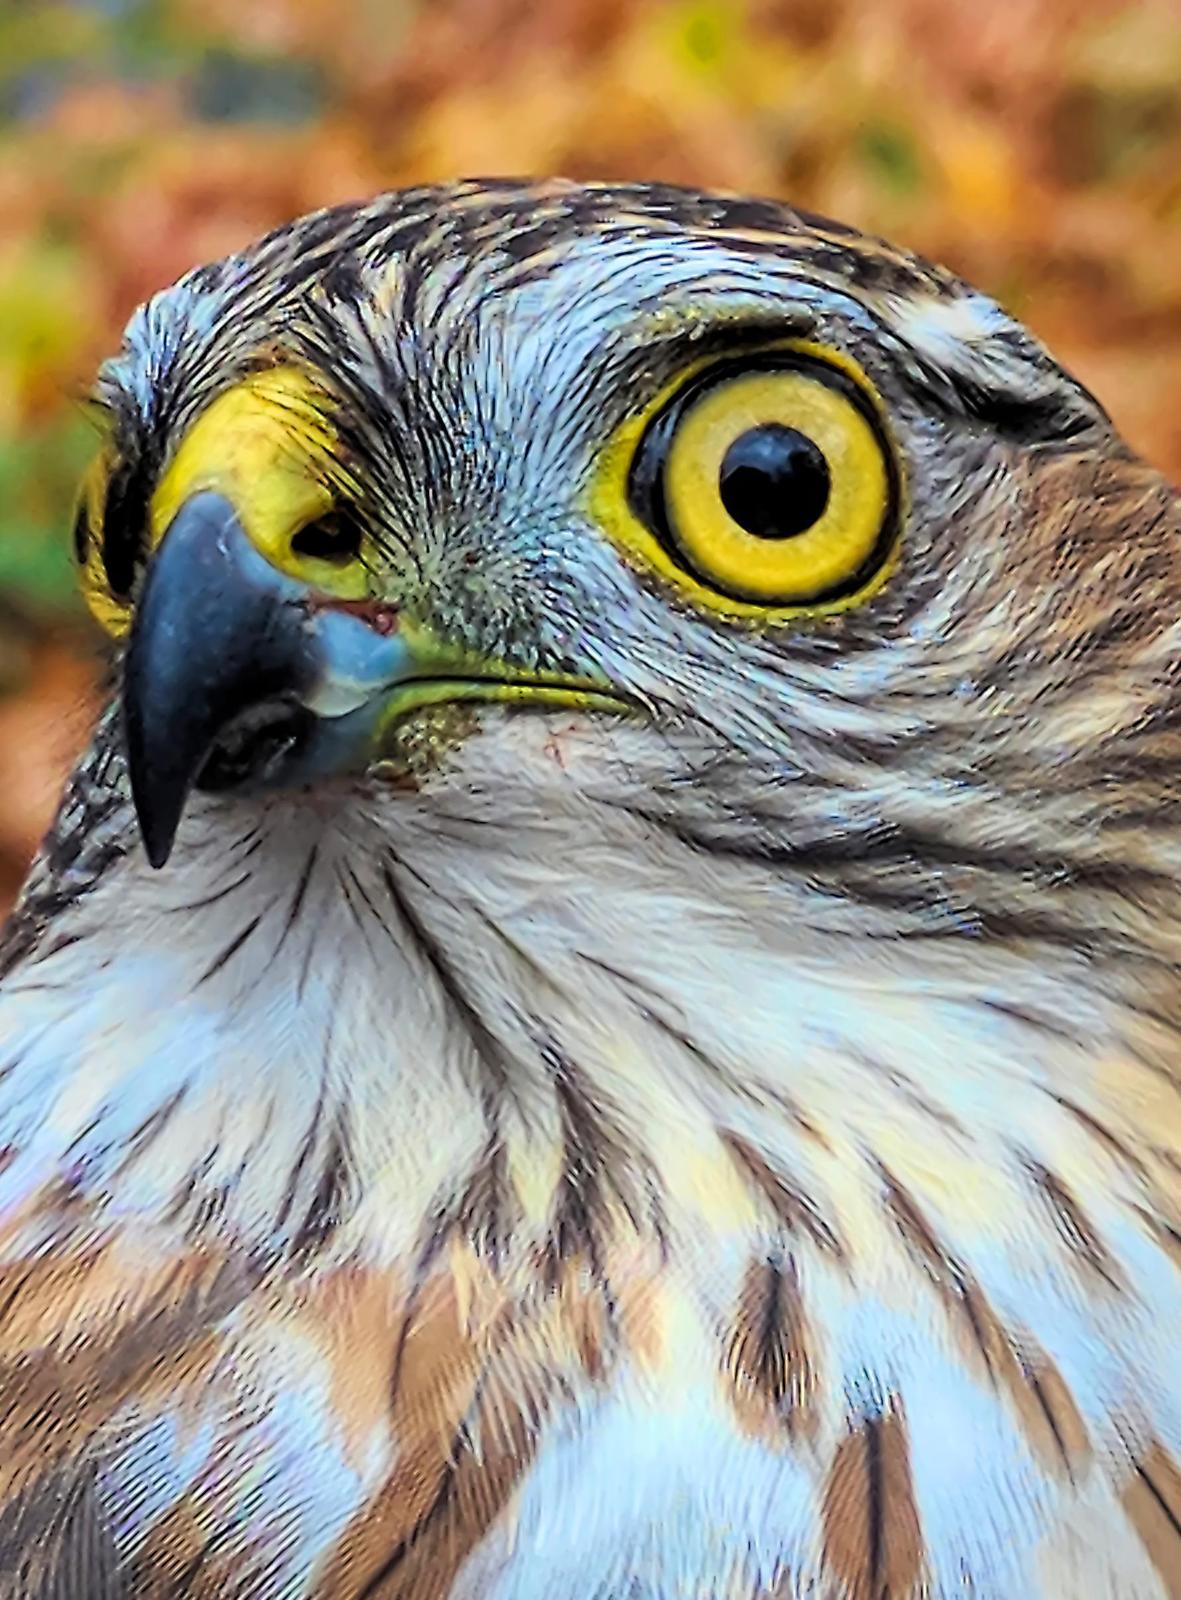 Sharp-shinned Hawk Photo by Dan Tallman